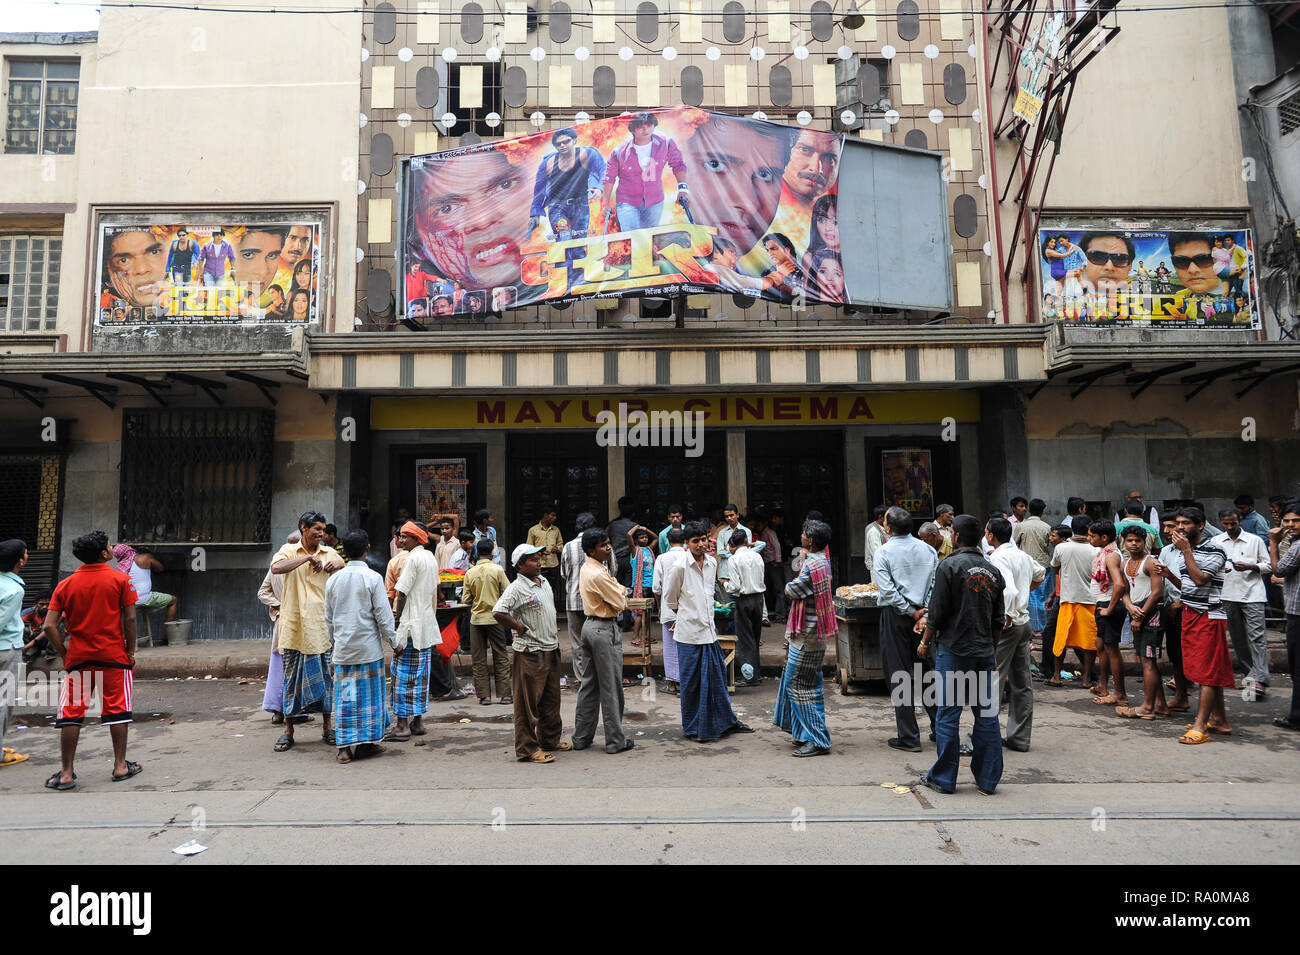 20.02.2011, Kolkata, Westbengalen, Indien, Asien - Eine grosse Gruppe von Indern wartet vor dem Eingang eines Kinos auf den Einlass. 0SL110220D007CARO Stock Photo